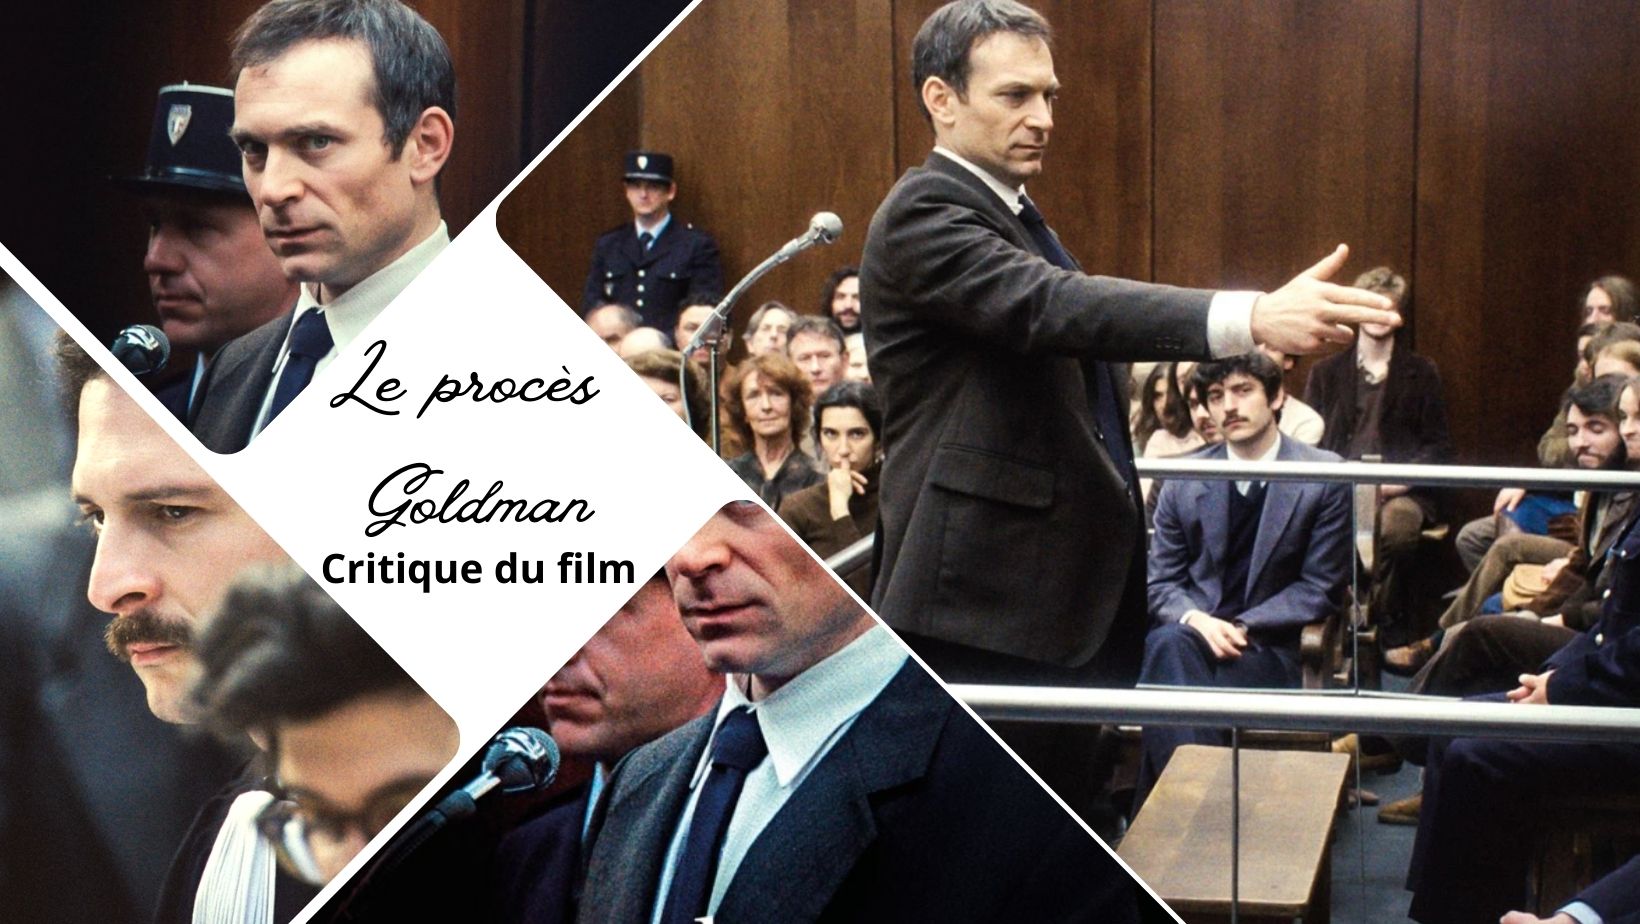 Le Procès Goldman de Cédric Kahn - Critique du film